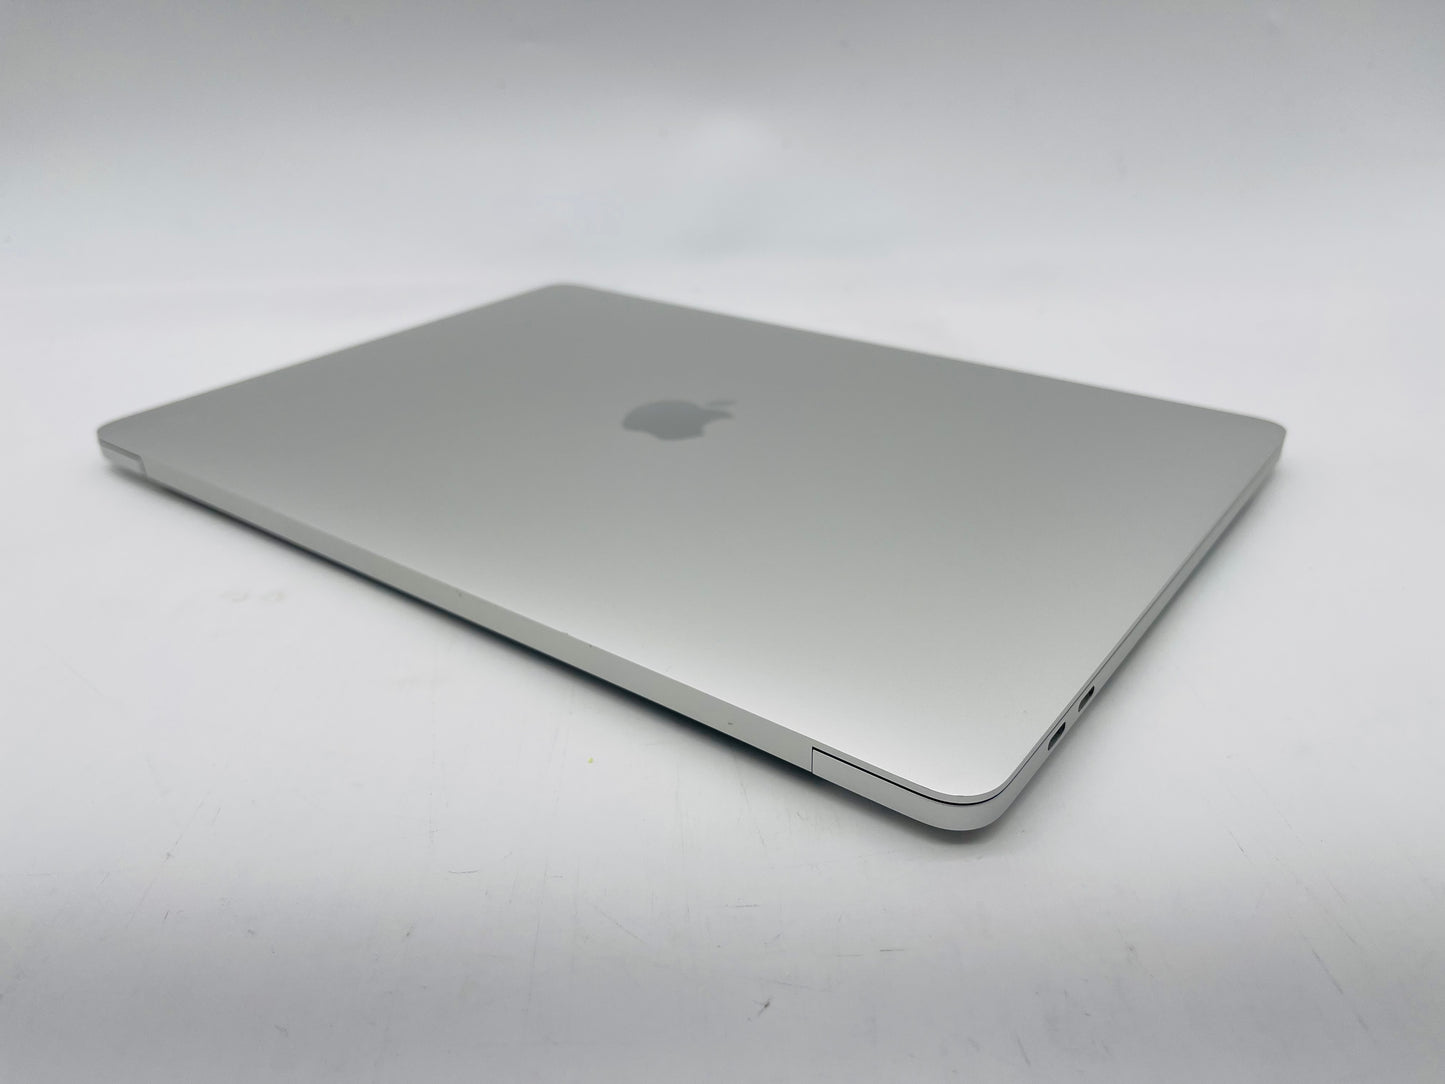 Apple 2020 MacBook Pro 13 in 2.0GHz i5 16GB RAM 512GB SSD IIPG1536 - Excellent